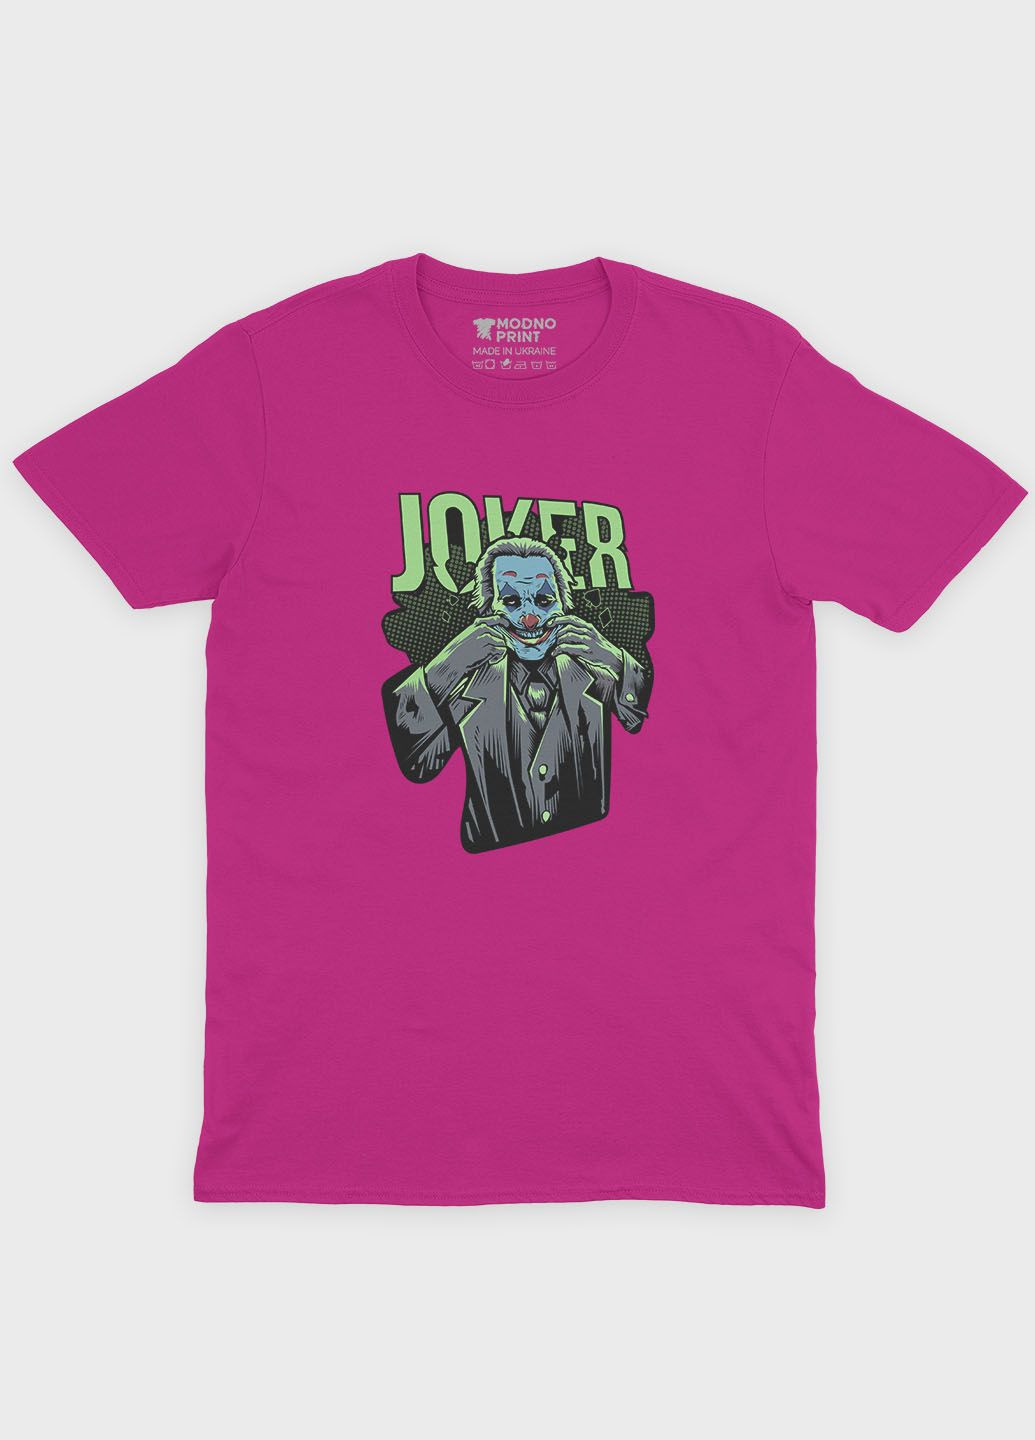 Рожева демісезонна футболка для хлопчика з принтом суперзлодія - джокер (ts001-1-fuxj-006-005-018-b) Modno